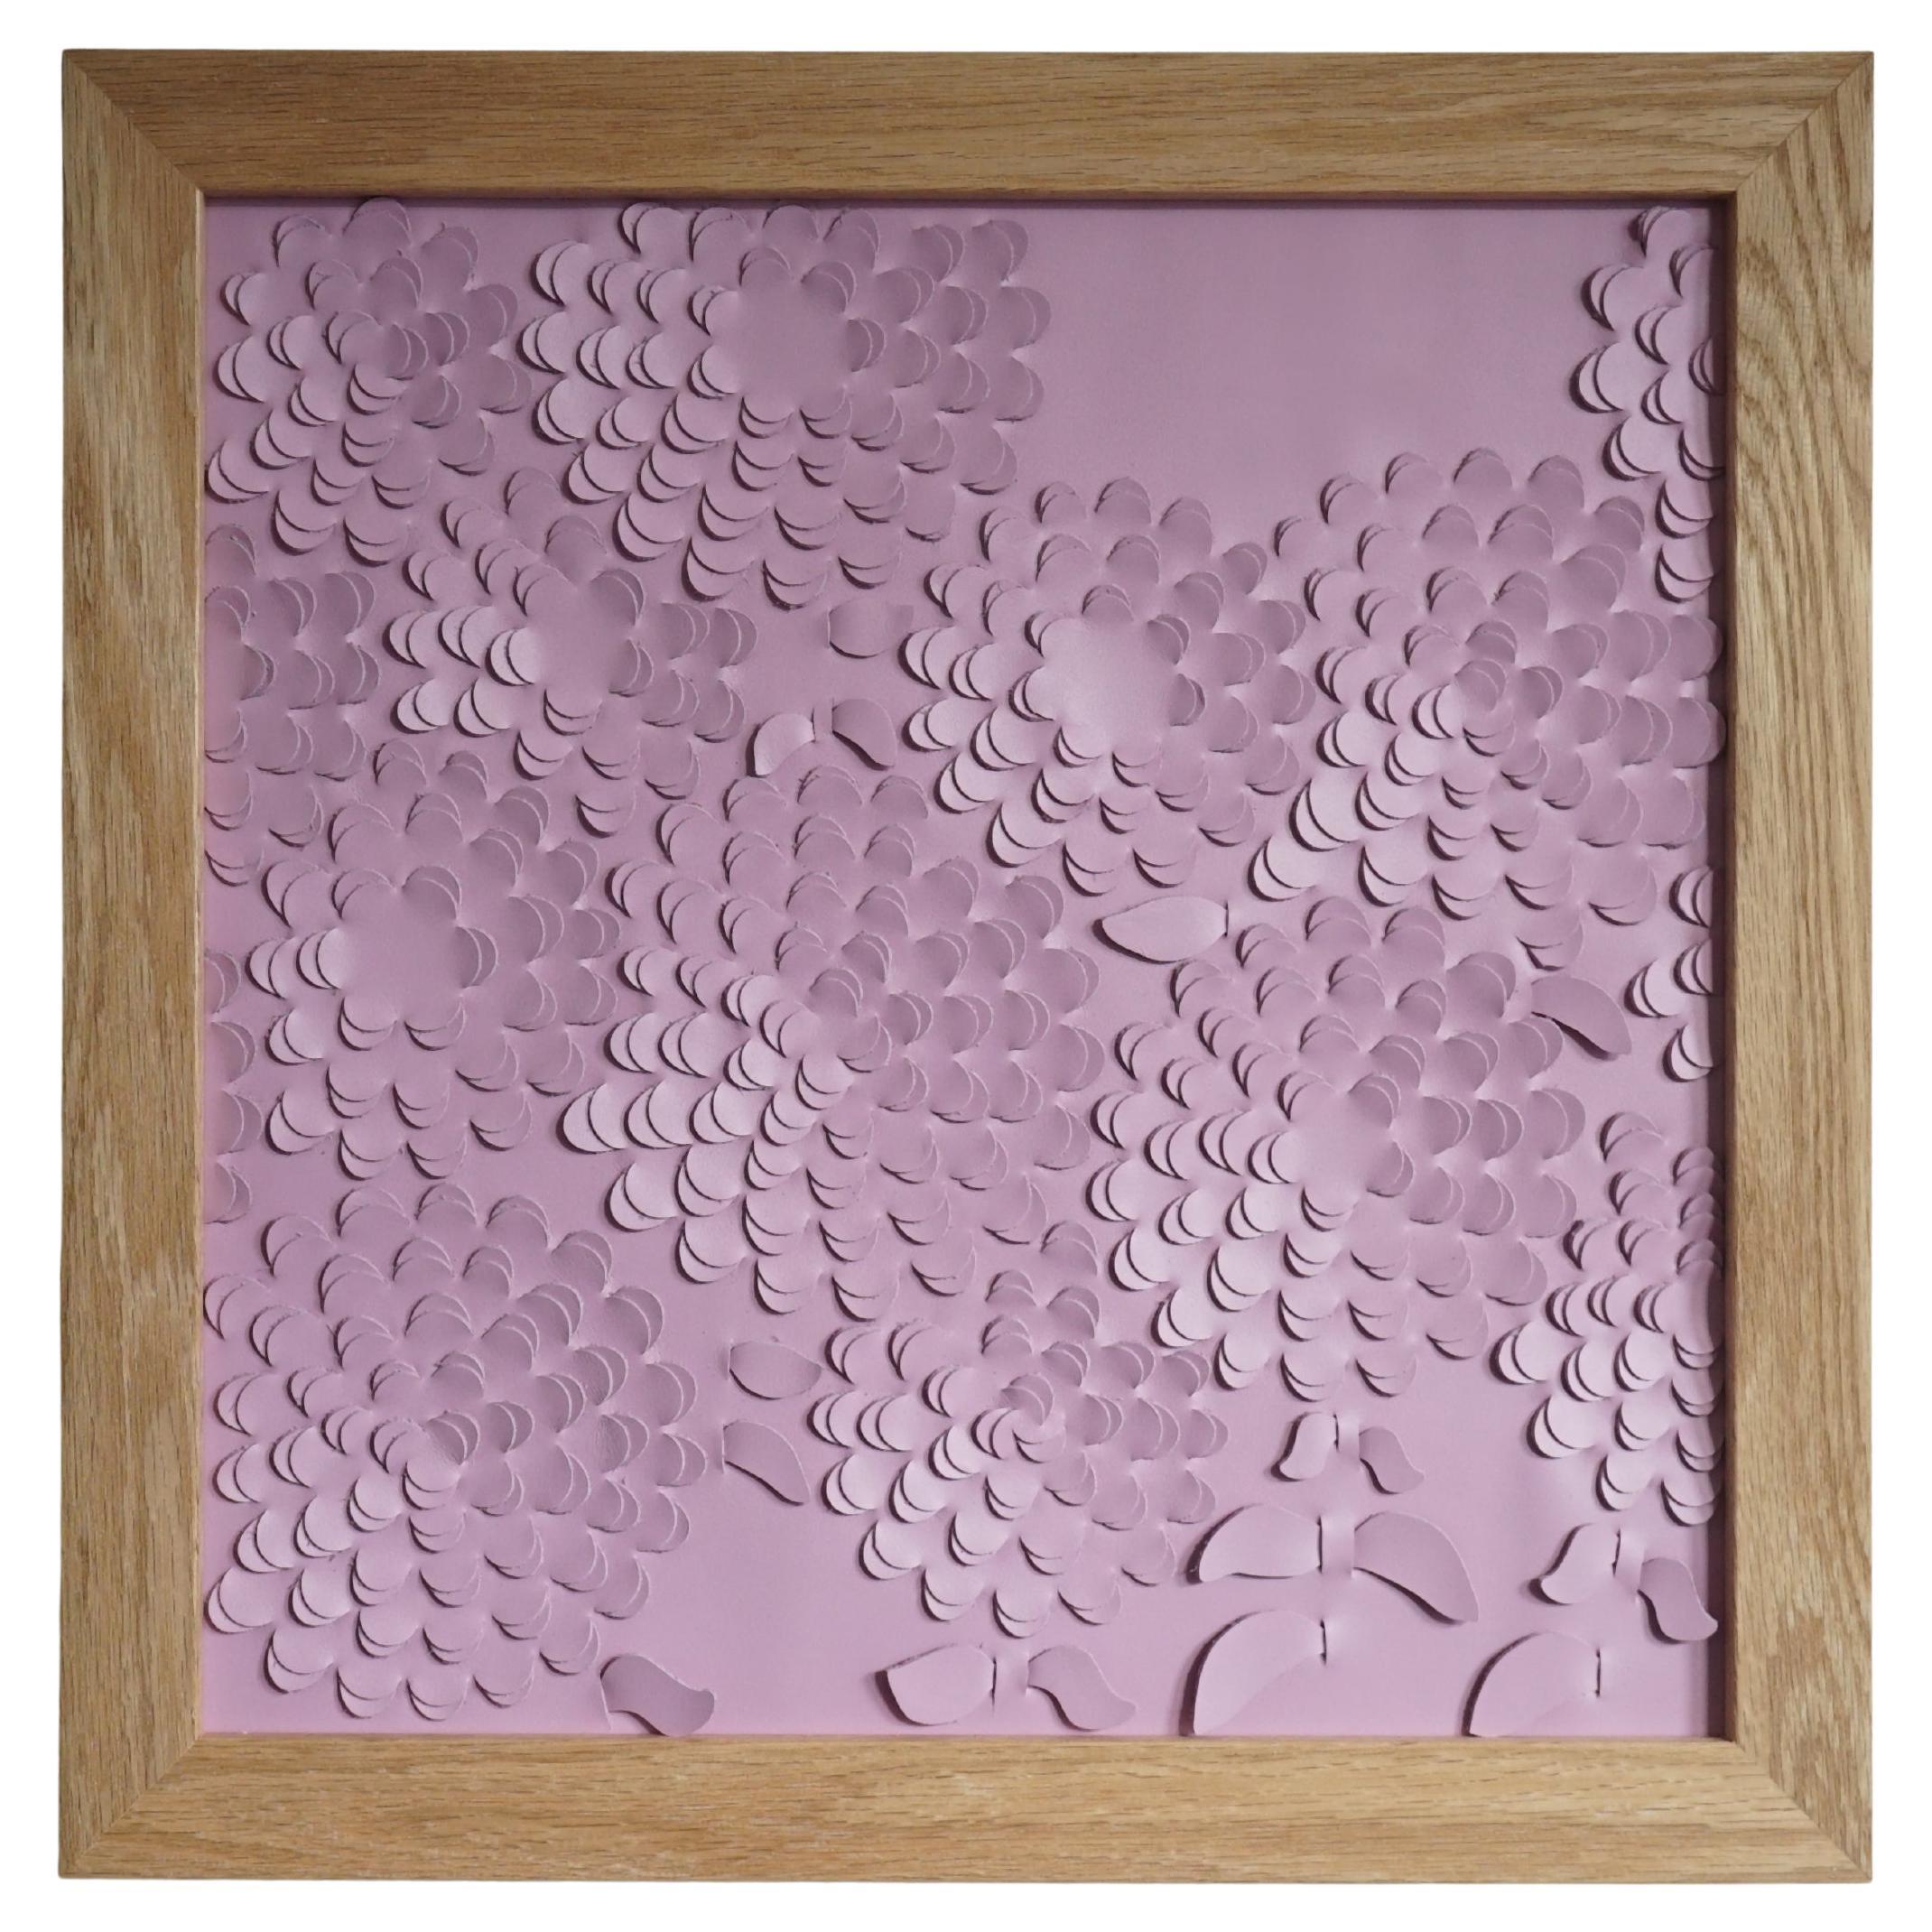 Le chrysanthème :

Une œuvre d'art murale sculpturale en 3D conçue et réalisée à partir de deux couches de cuir rose, tissées ensemble par Louise Heighes.
Les mesures sont de 17 x 17 pouces ou 43 x 43 cm

Cette pièce s'inspire de la grande masse de